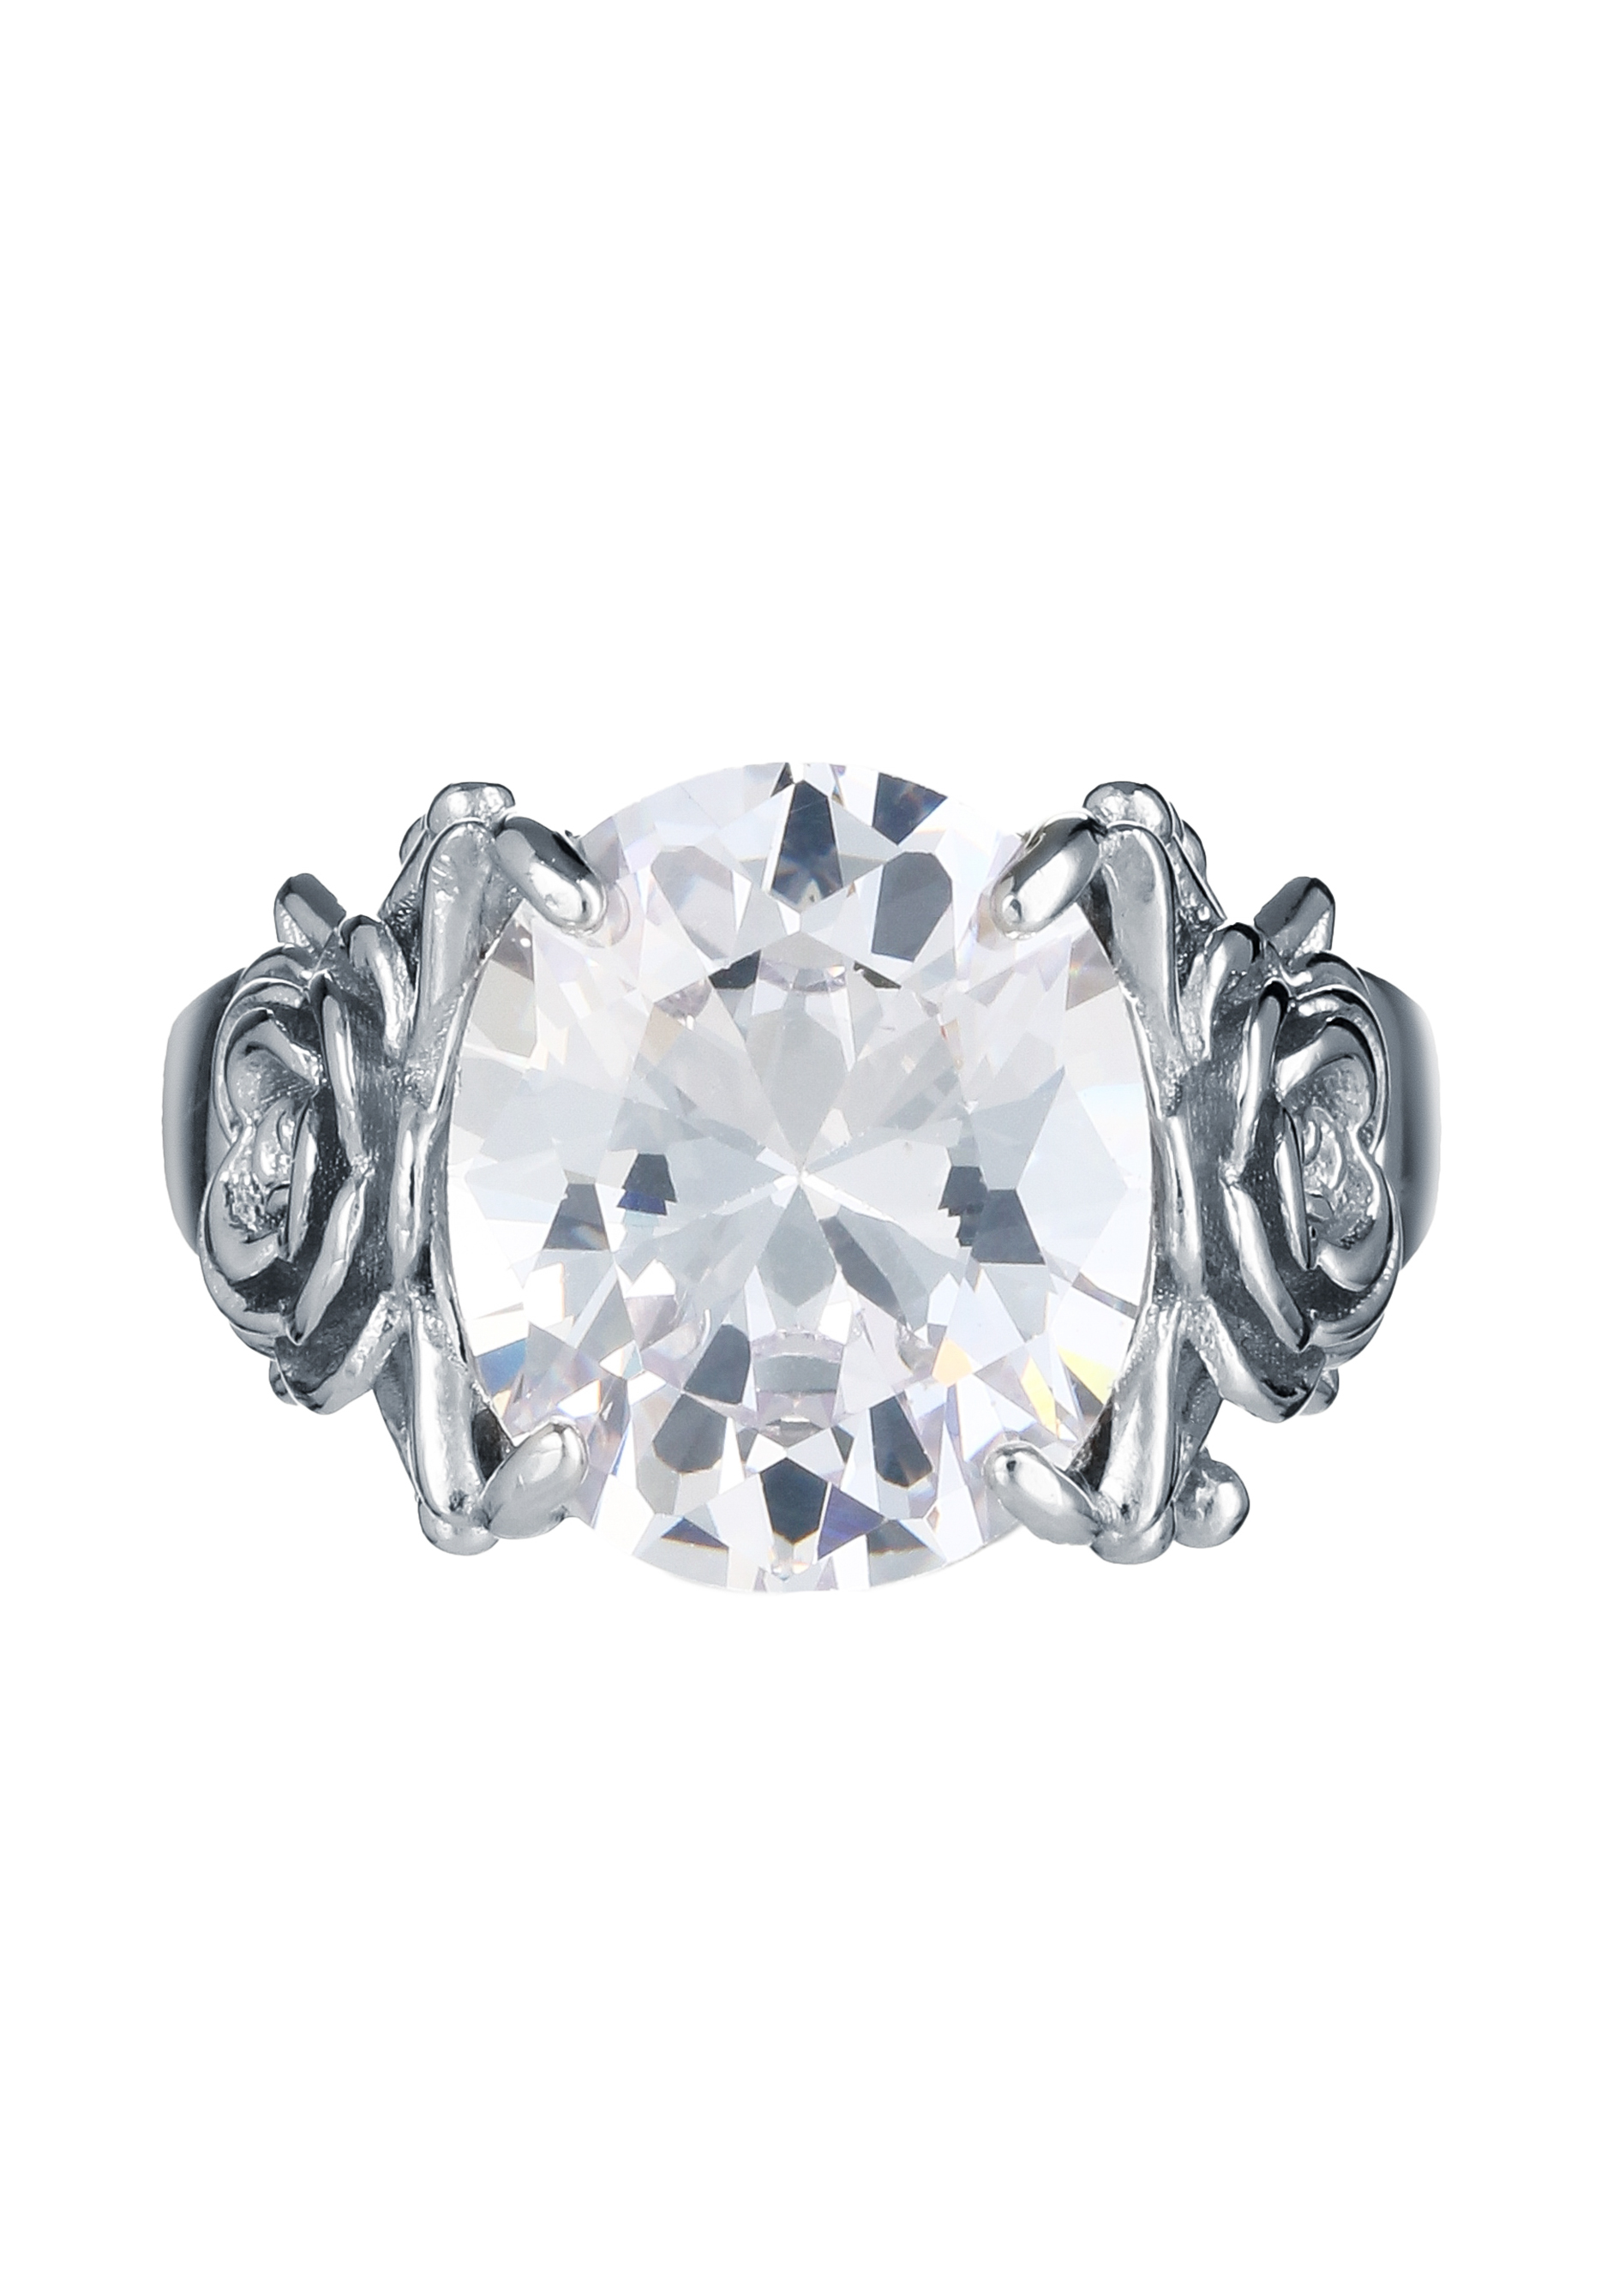 Кольцо серебряное "Изобилие чувств" Приволжский ювелир, цвет серый, размер 19 перстень - фото 2